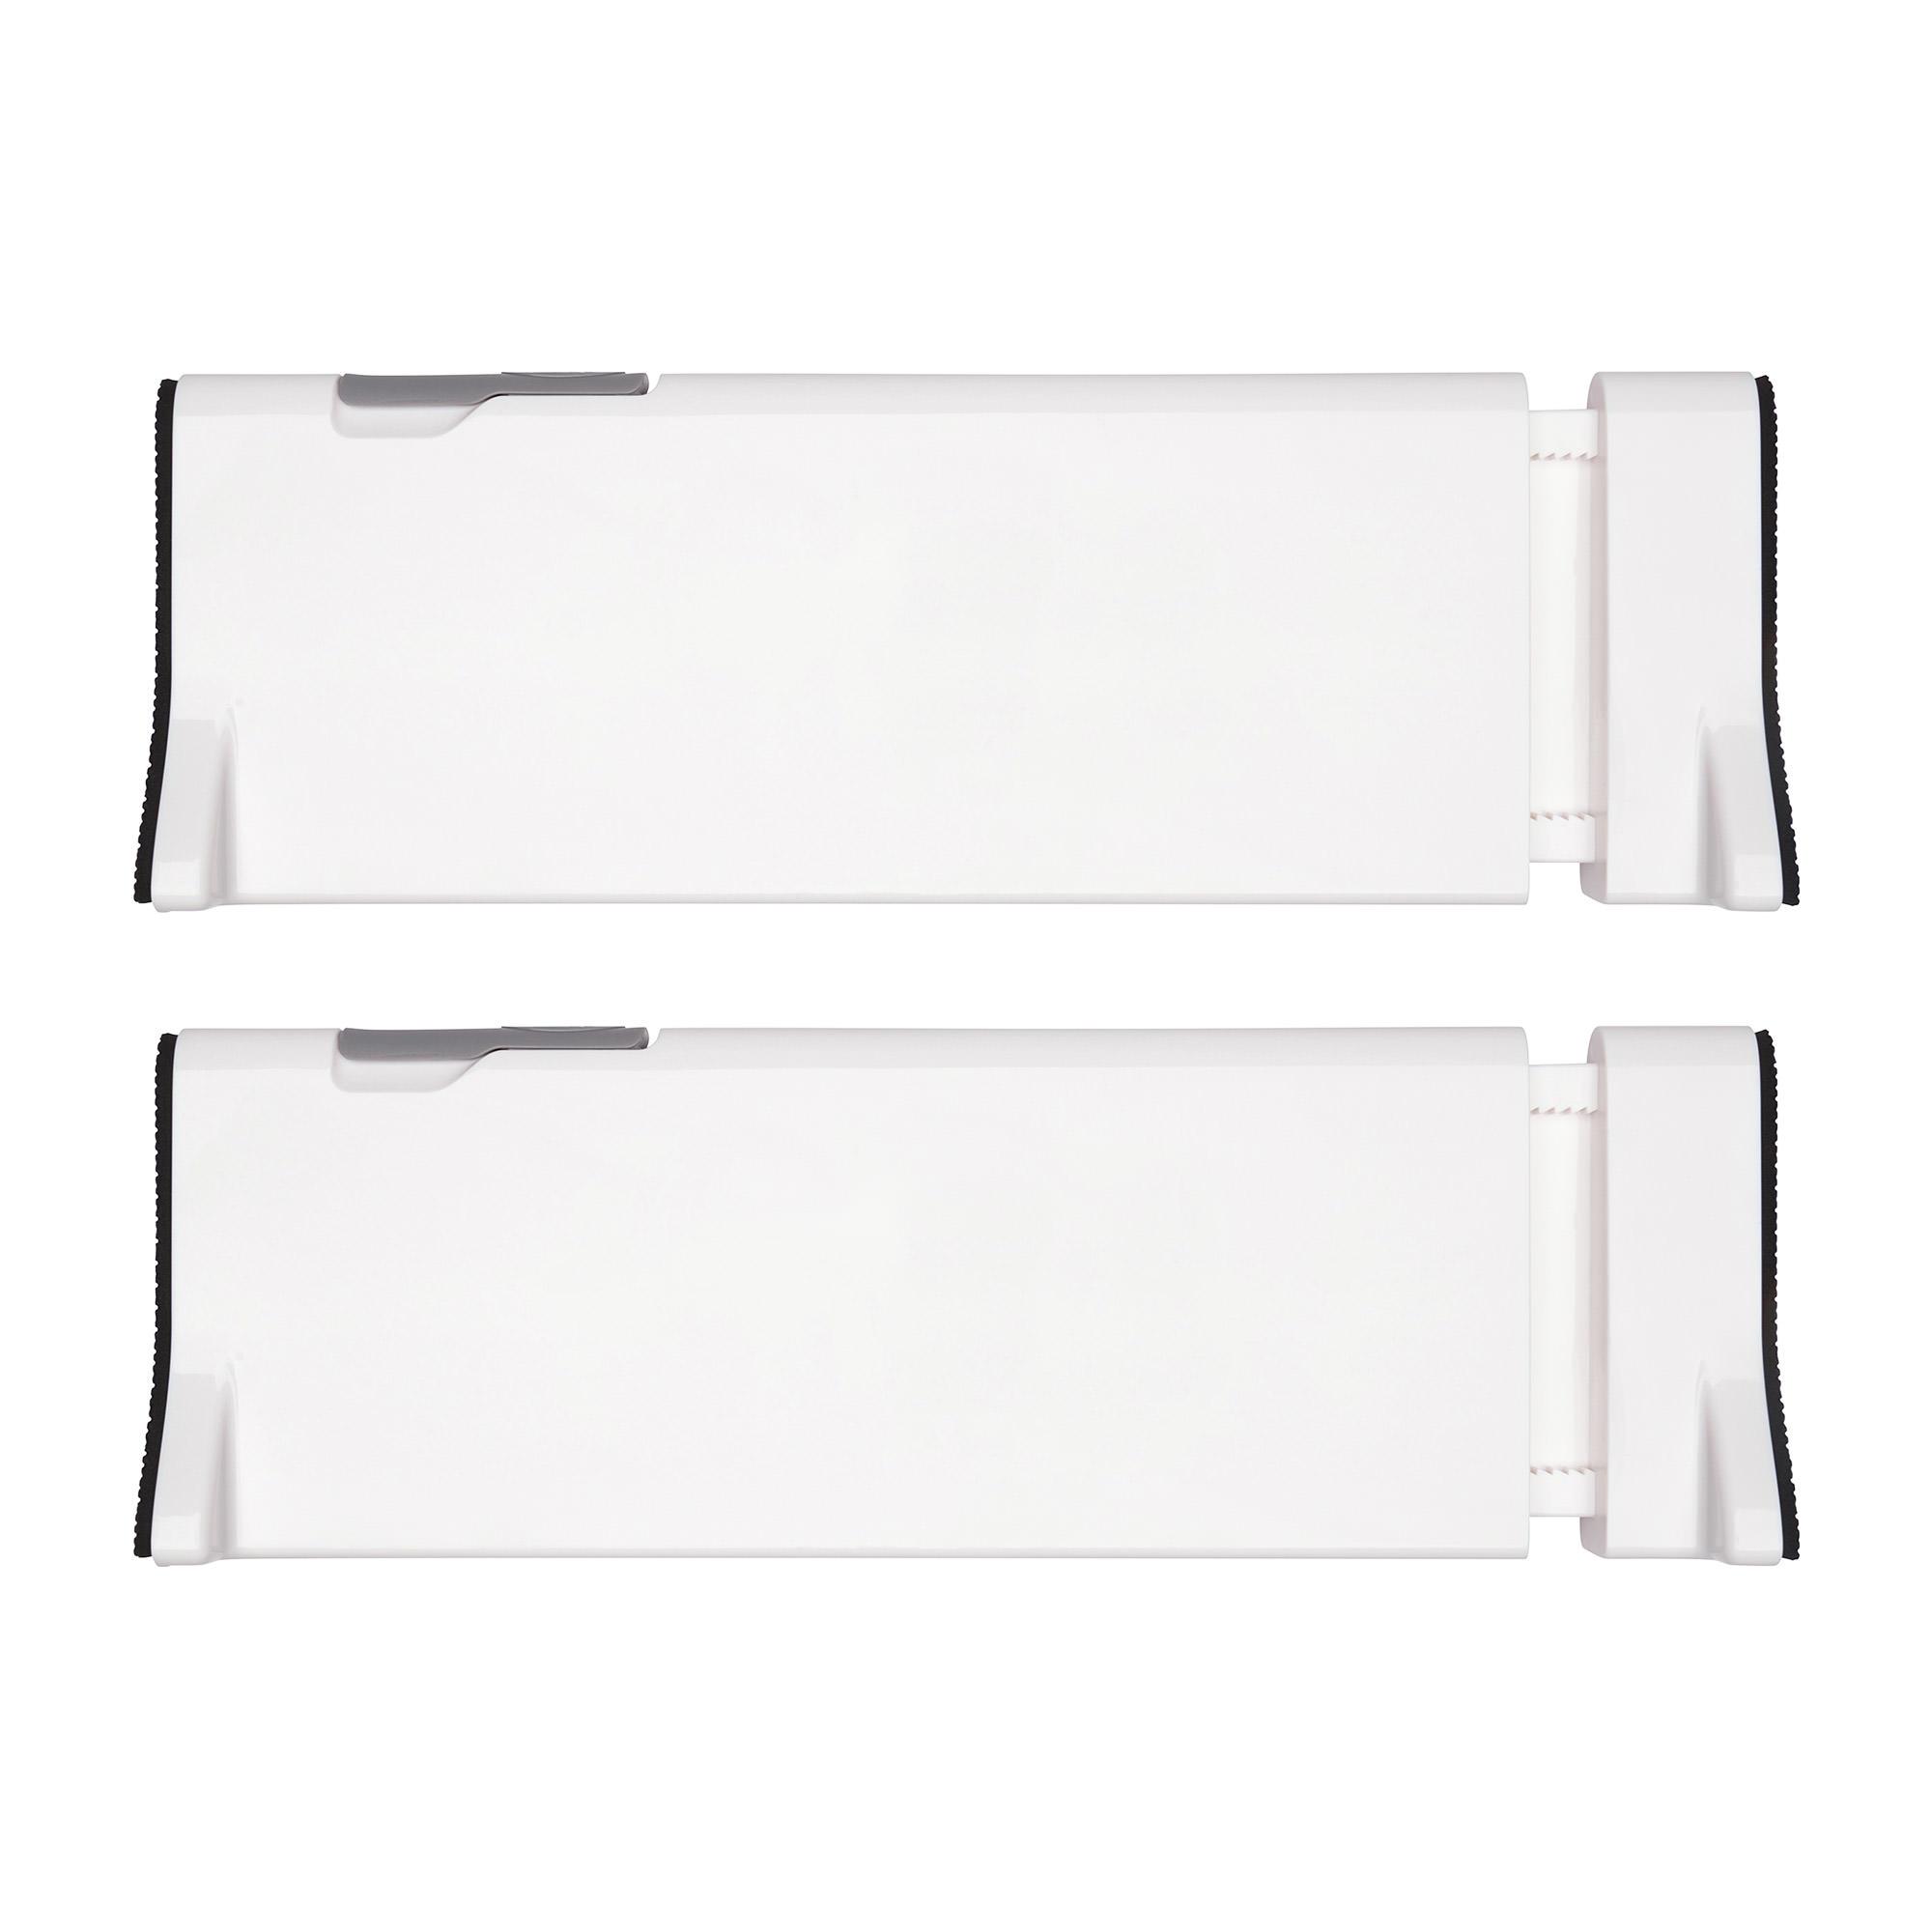 OXO Good Grips Expandable Dresser Drawer Divider 2pk White Image 1